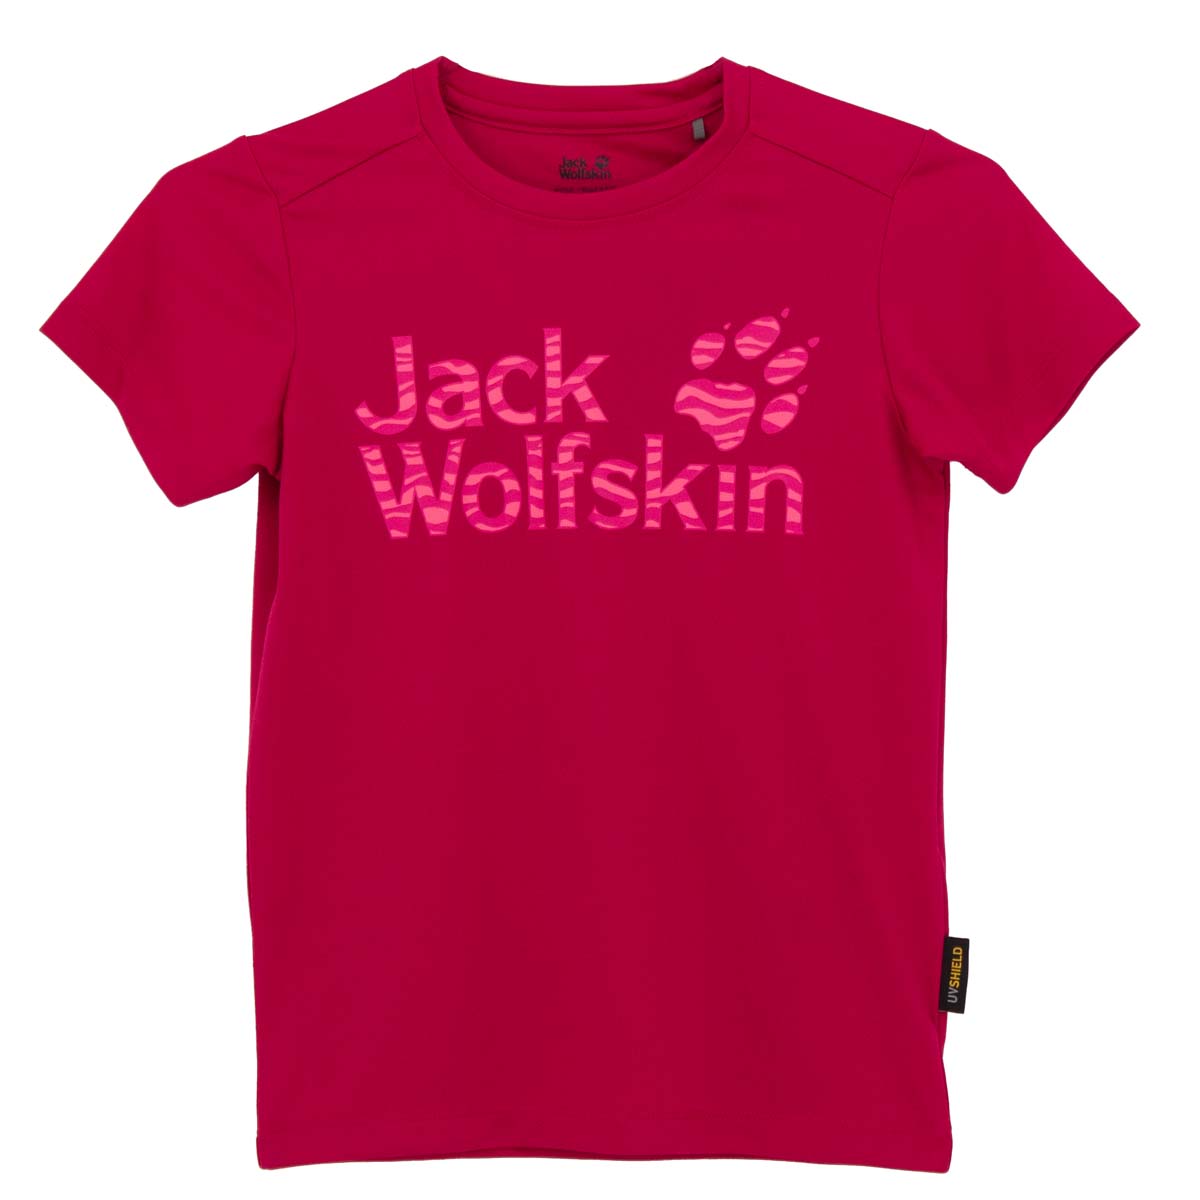 Jack Wolfskin Jungle Tee Dschungel T-Shirt UV-Shirt Kinder Pink 1607441-2081